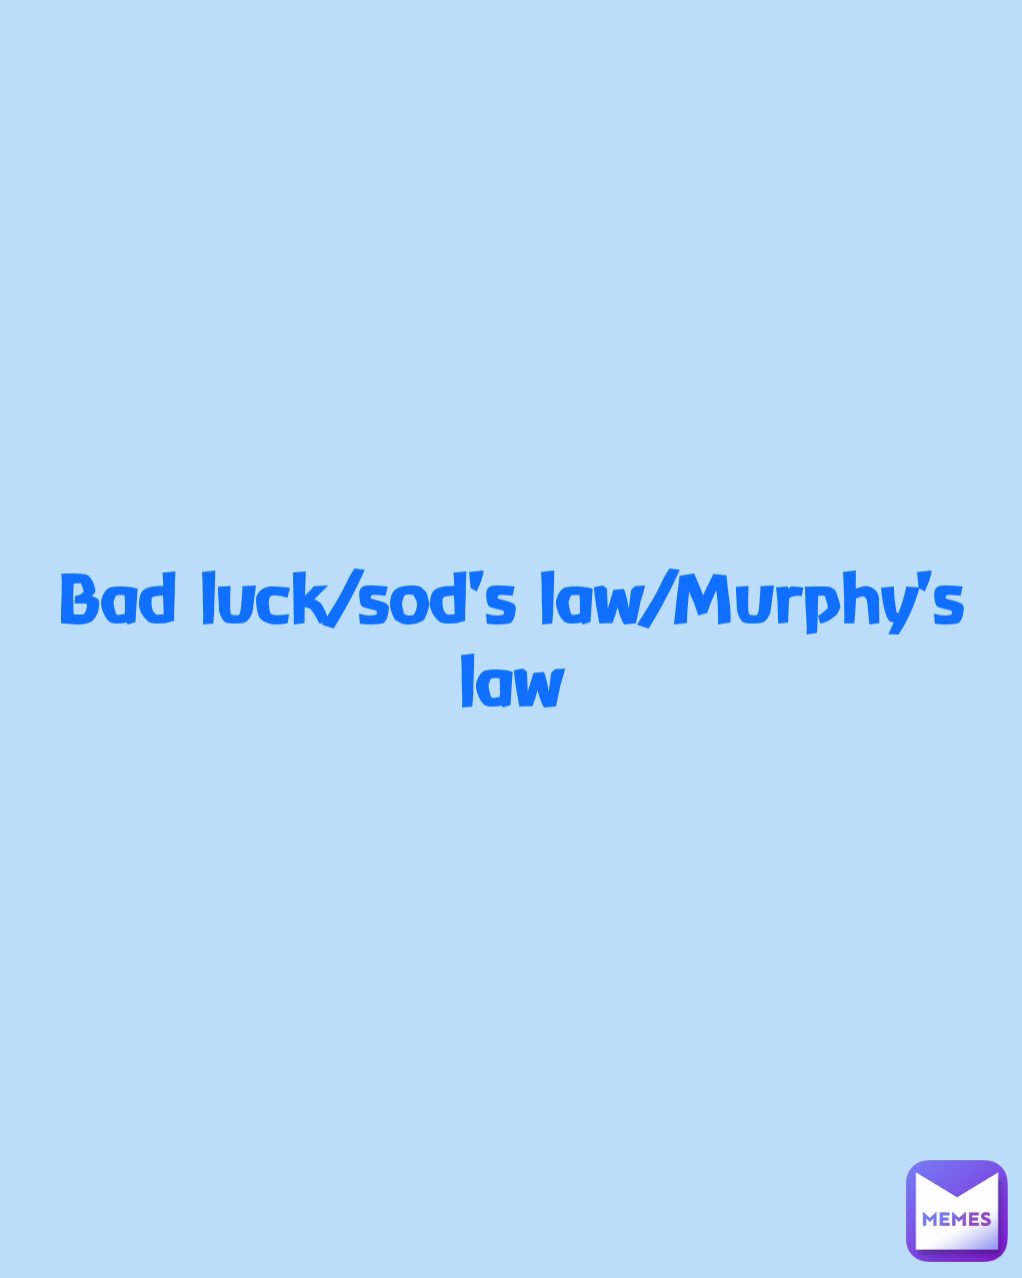 Bad luck/sod's law/Murphy's law